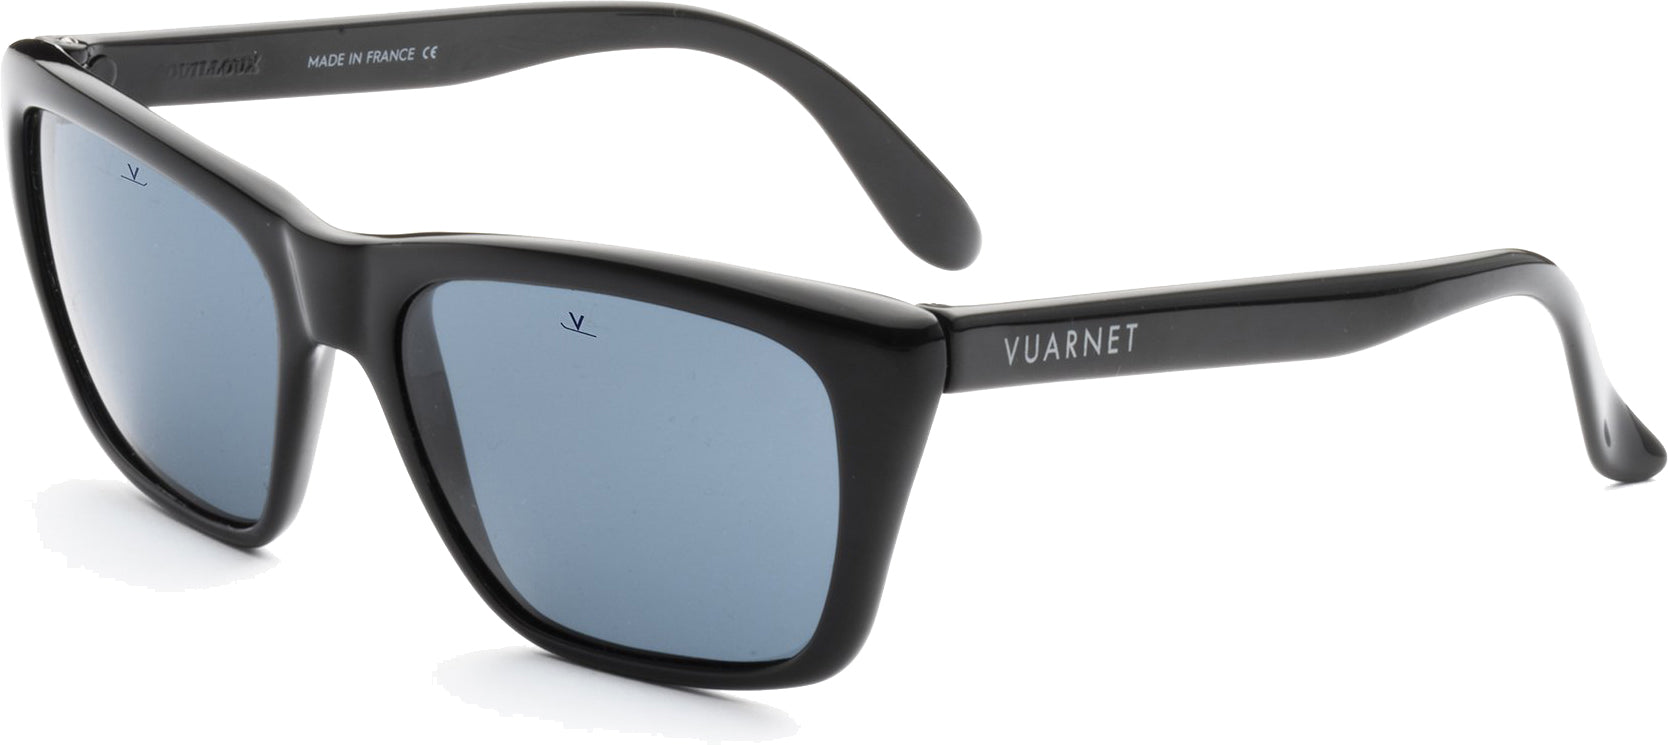 Vuarnet - Resort - Blue / Blue Polarlynx - Mineral Lenses Sunglasses